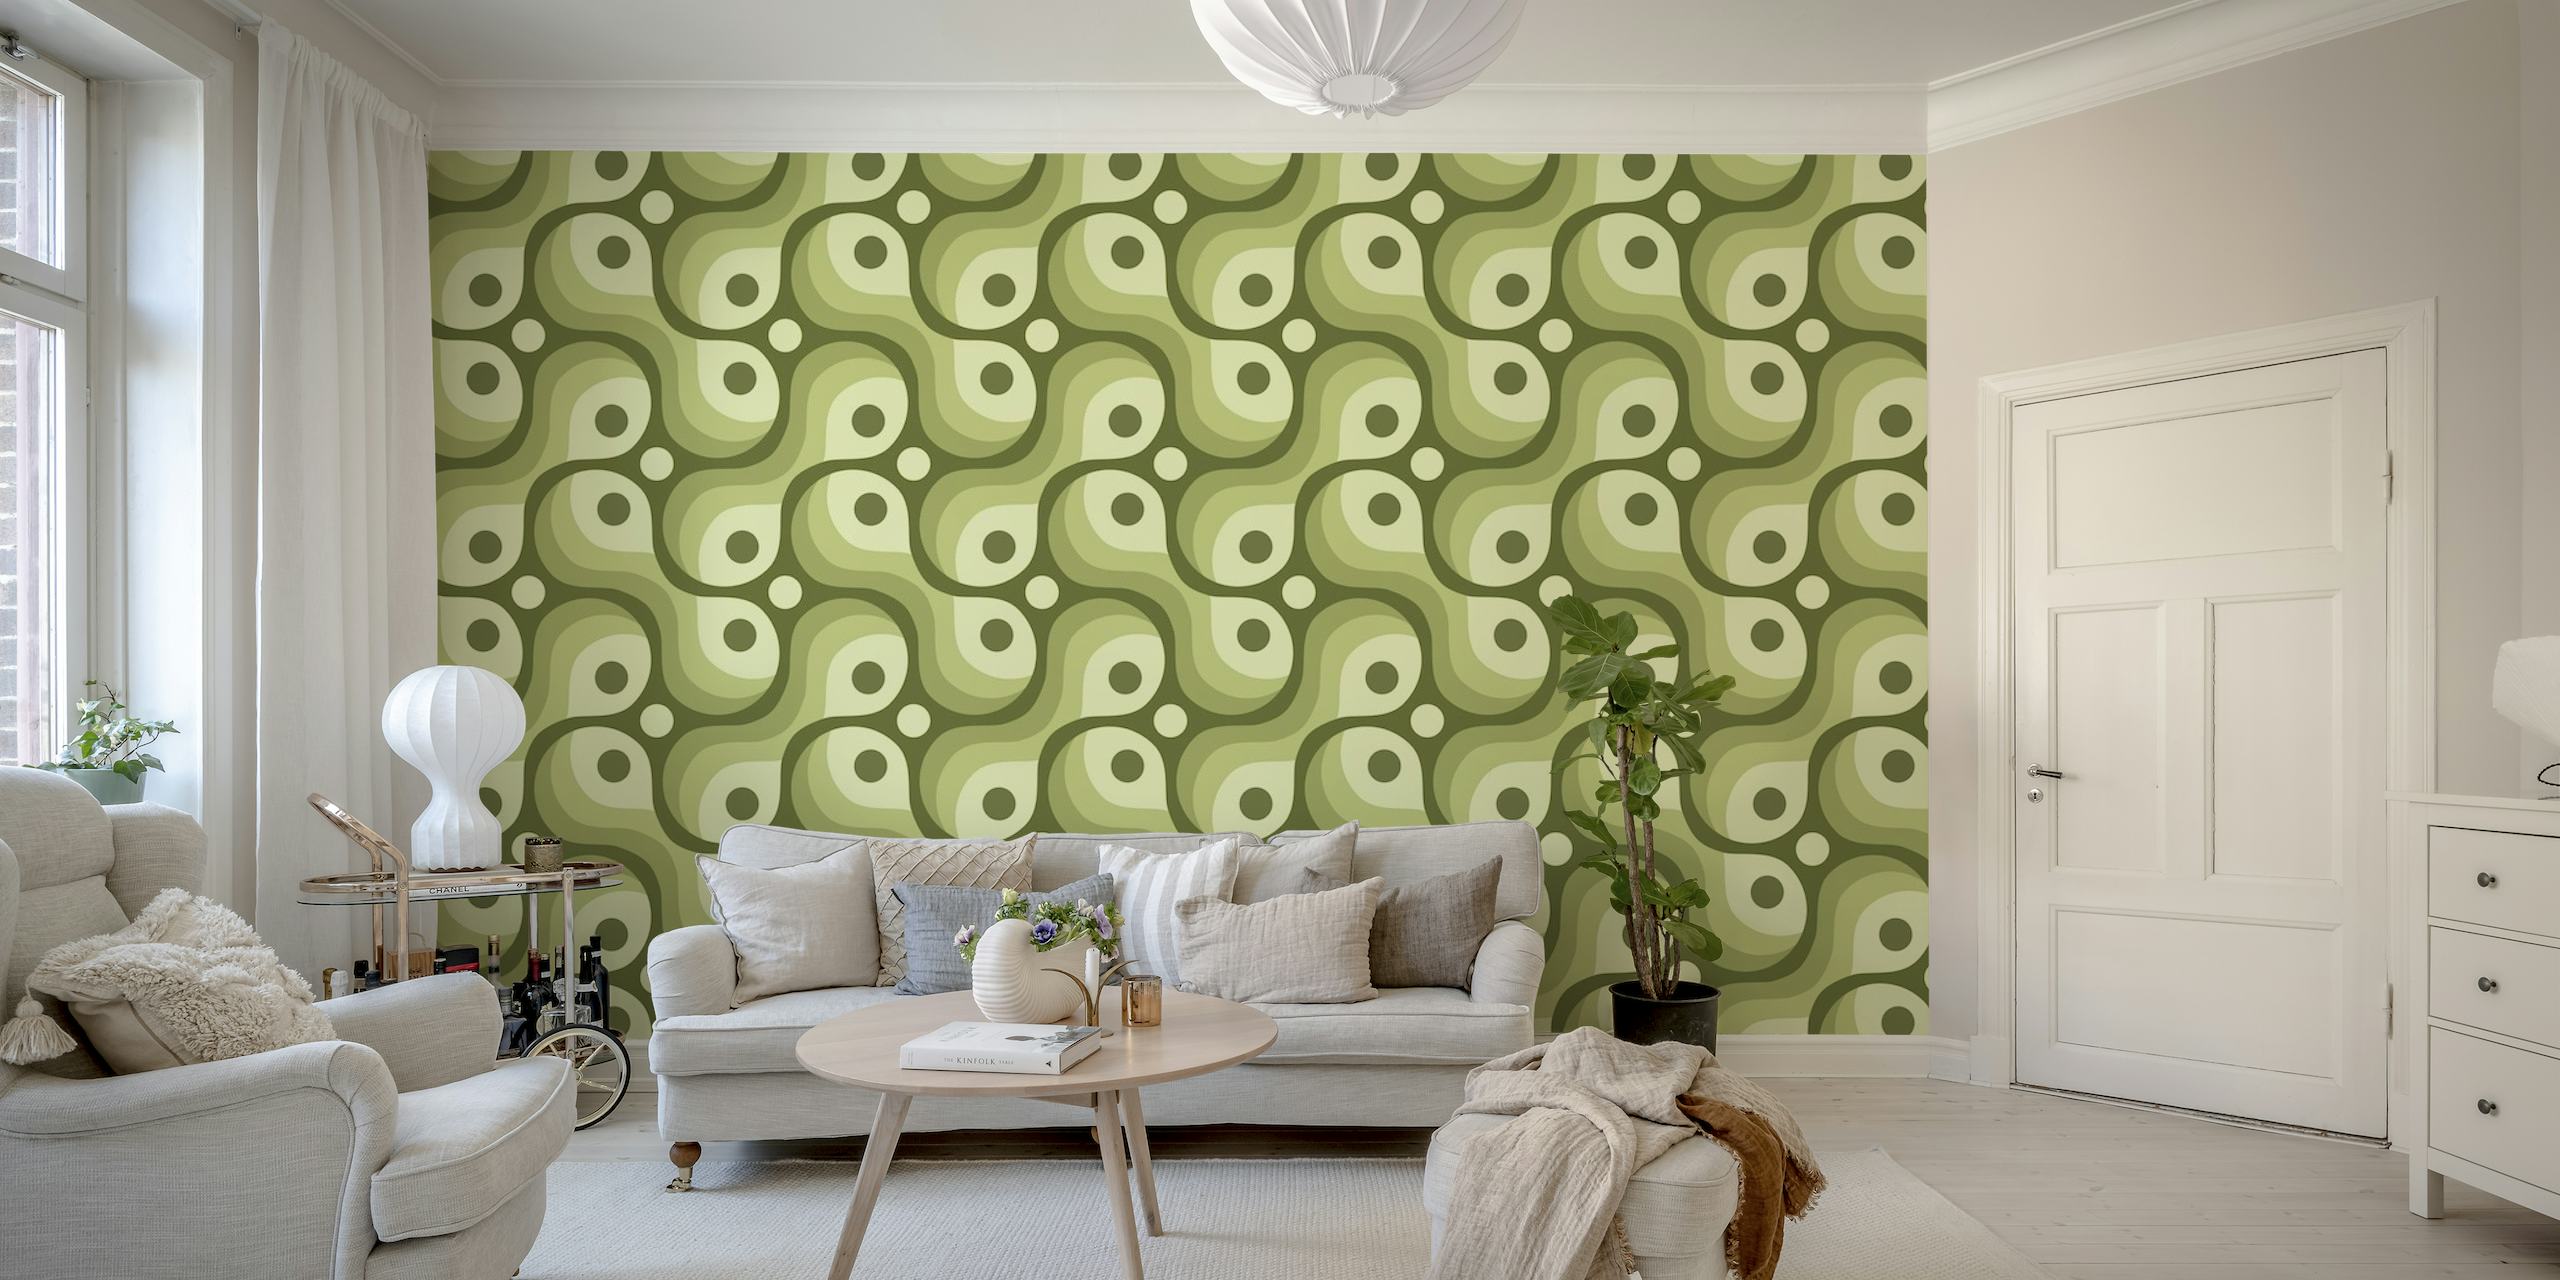 2200 Green abstract pattern papel pintado